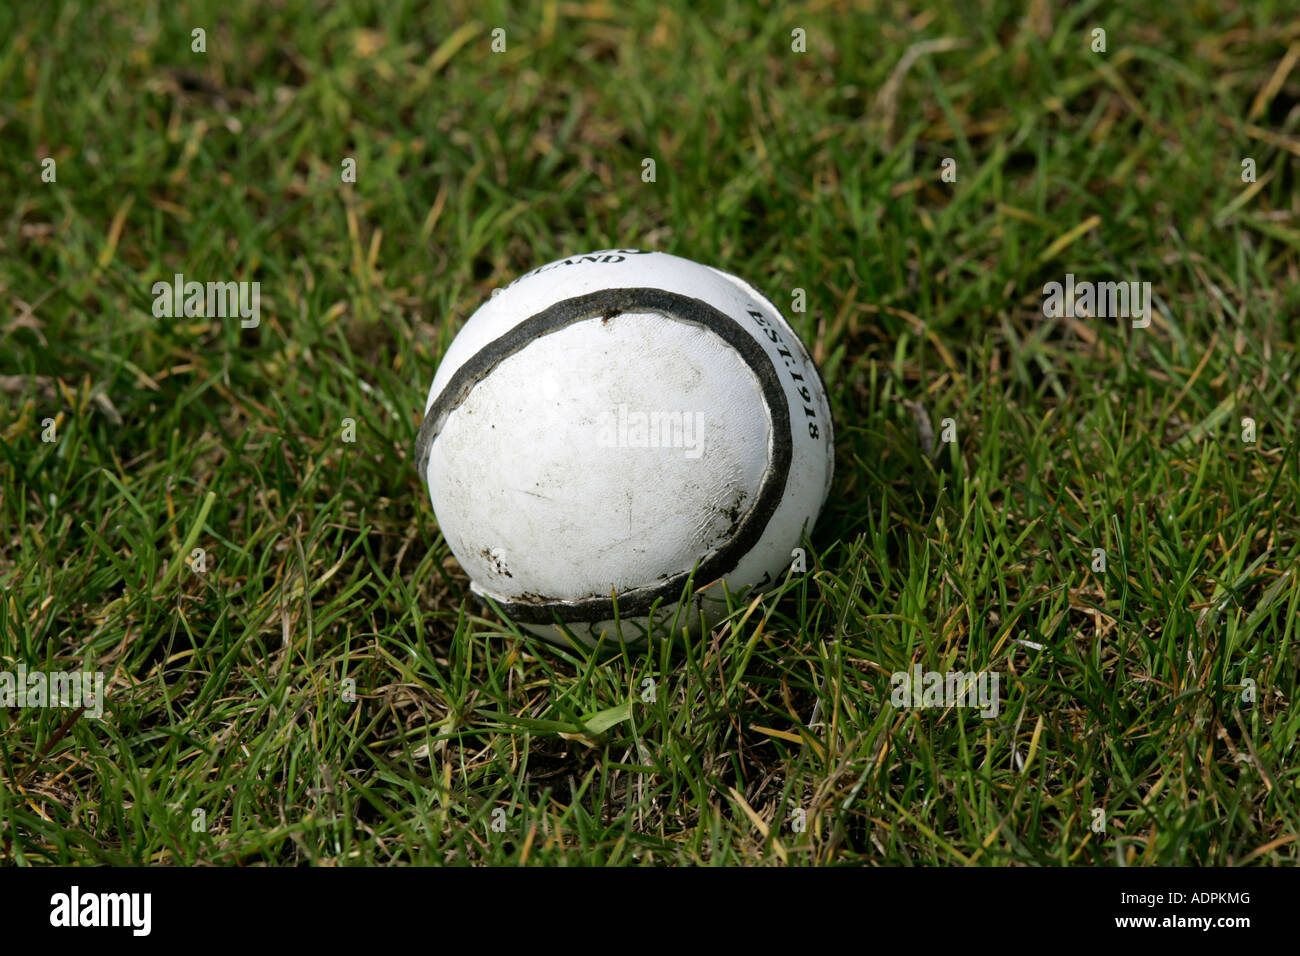 Cuoio sliothar hockey irlandese palla giacente sul campo in erba Foto Stock